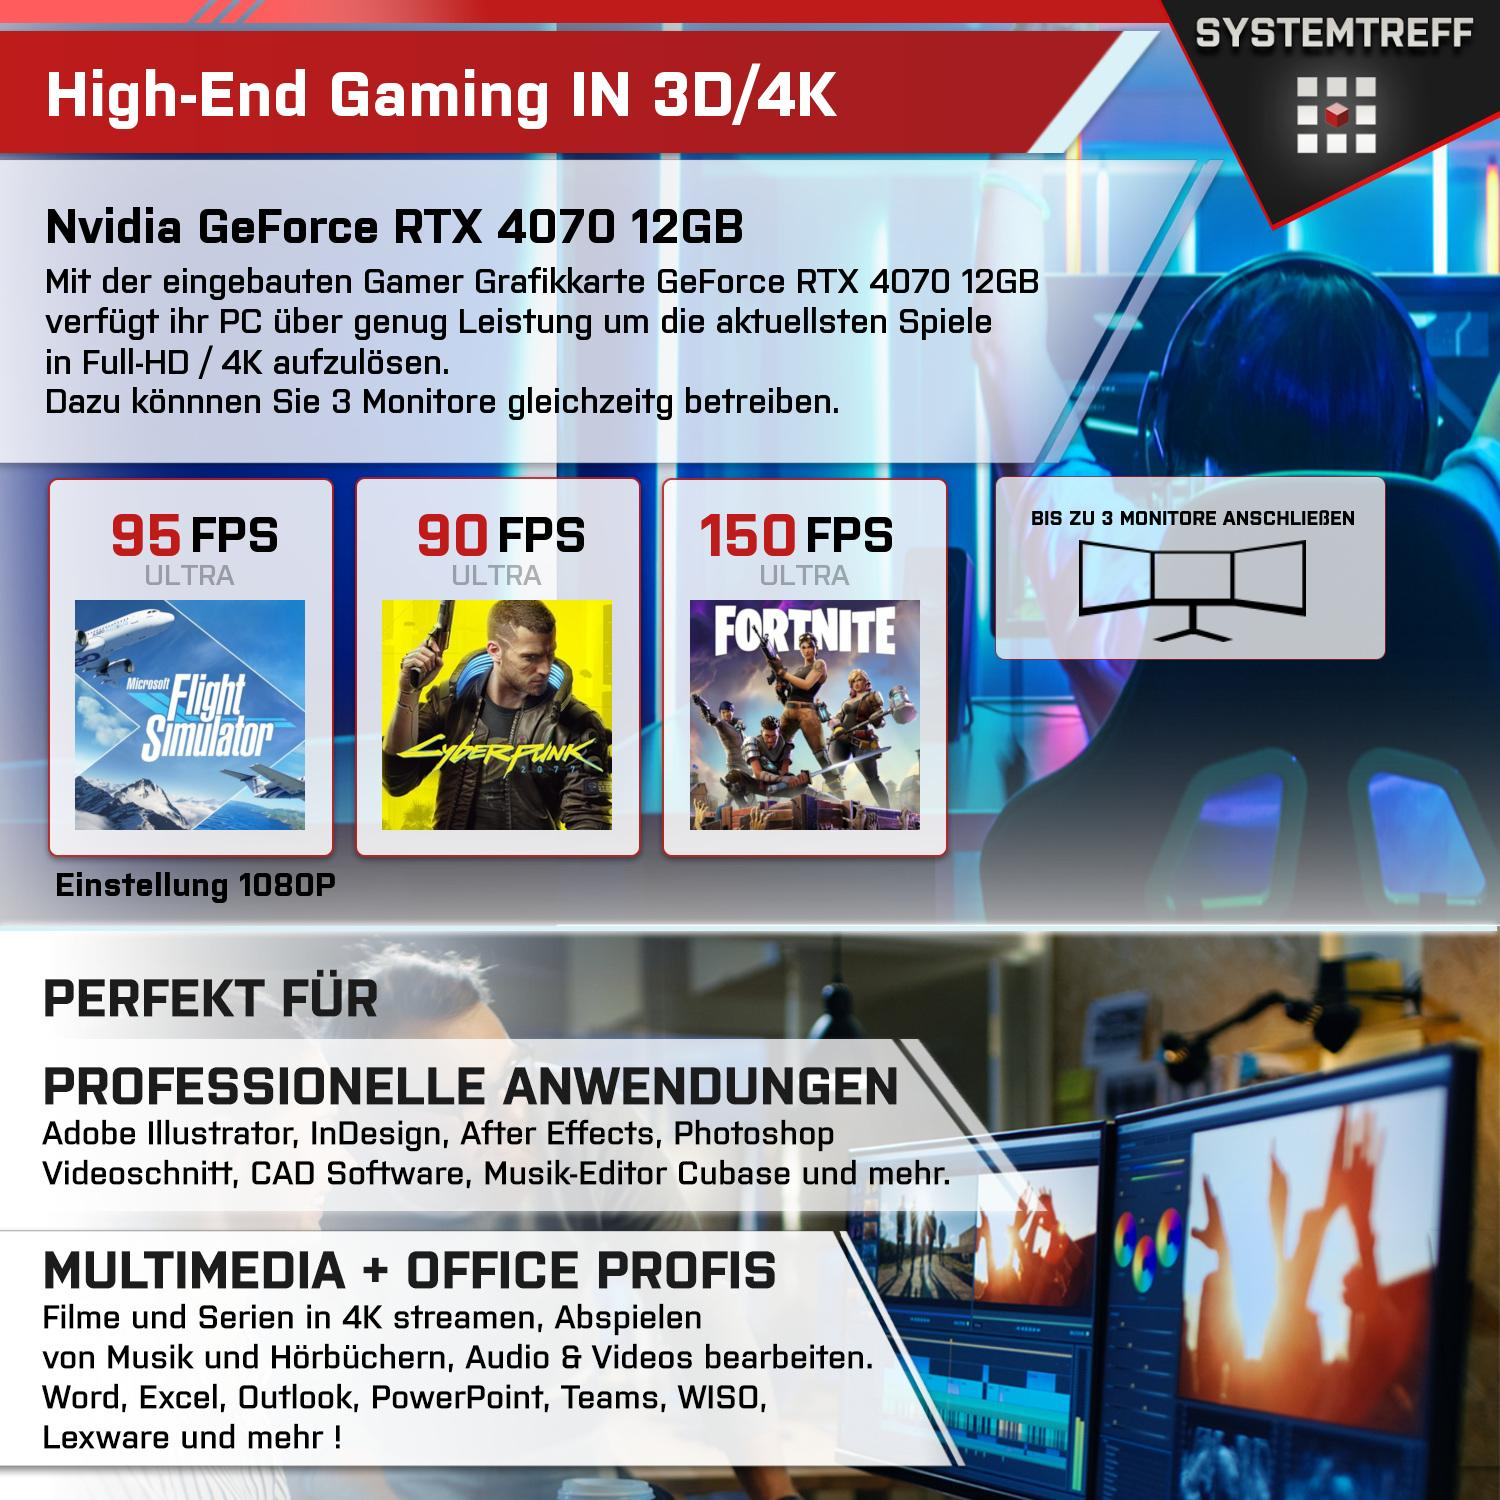 SYSTEMTREFF Gaming Komplett RTX 32 Nvidia GDDR6, Prozessor, 12GB 7 5700X, Ryzen 5700X RAM, GB GB GB 4070 1000 Komplett mSSD, GeForce AMD mit PC 12